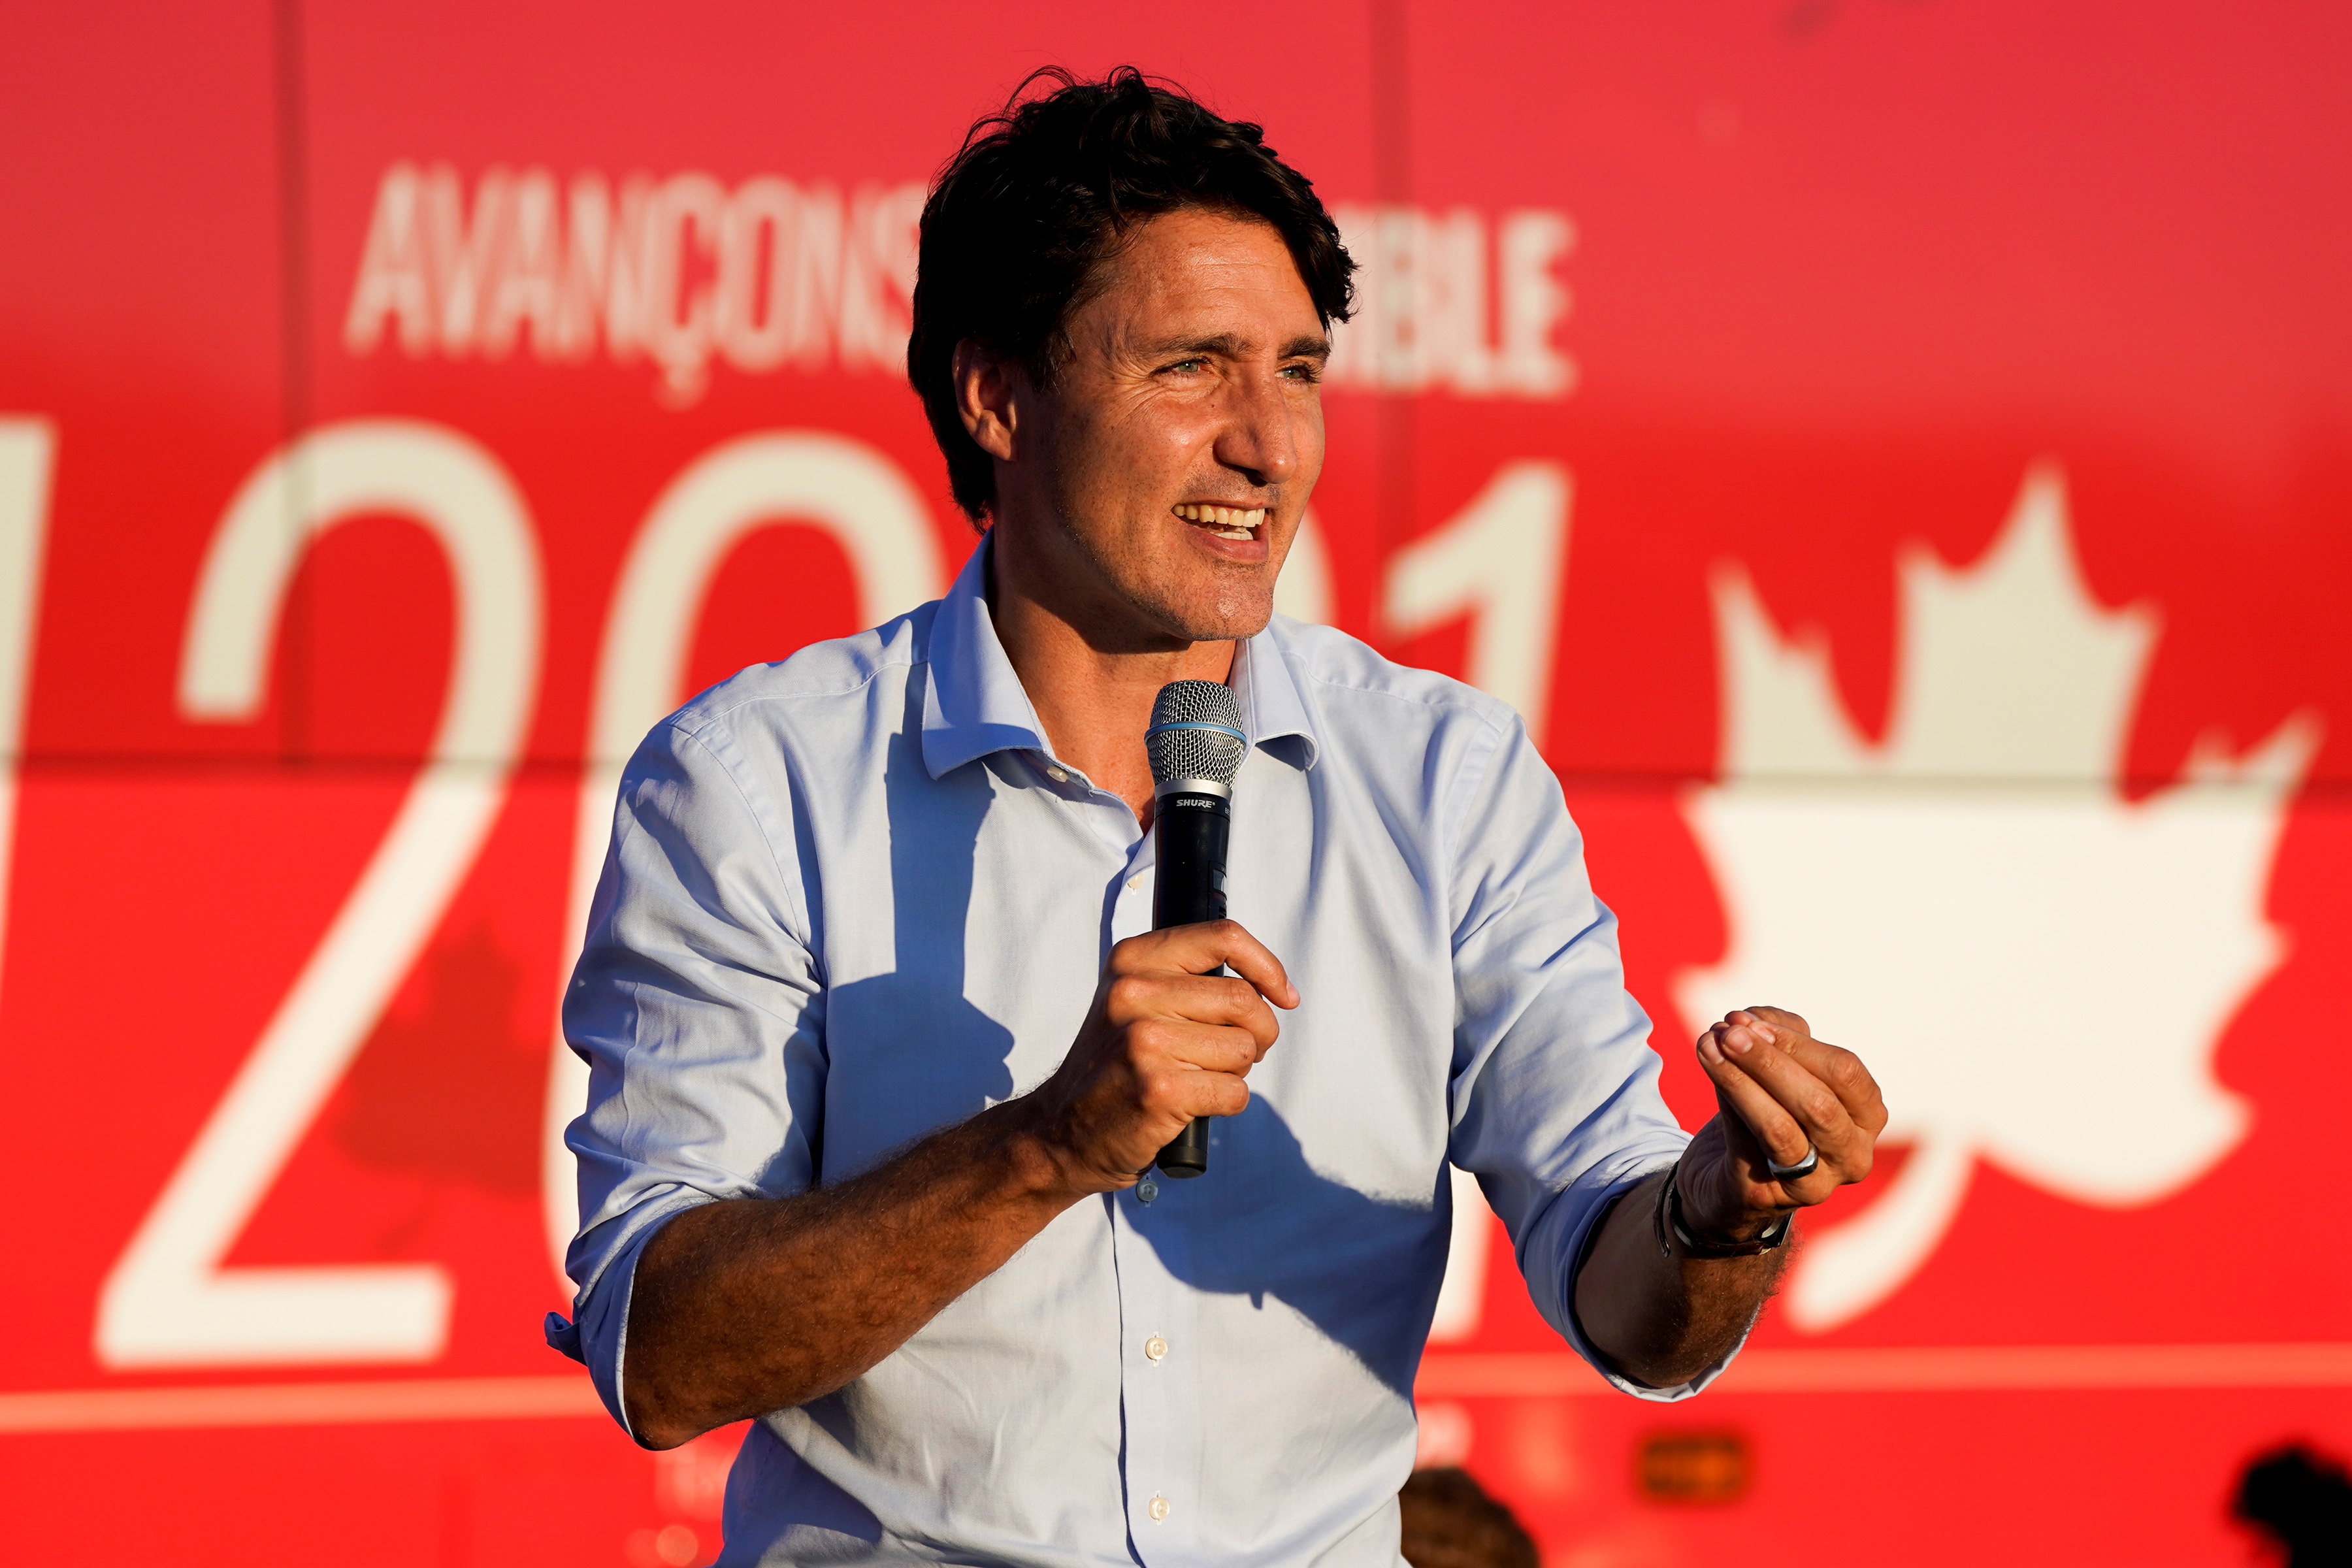 Canada's Prime Minister Justin Trudeau campaigns in Hamilton, Ontario